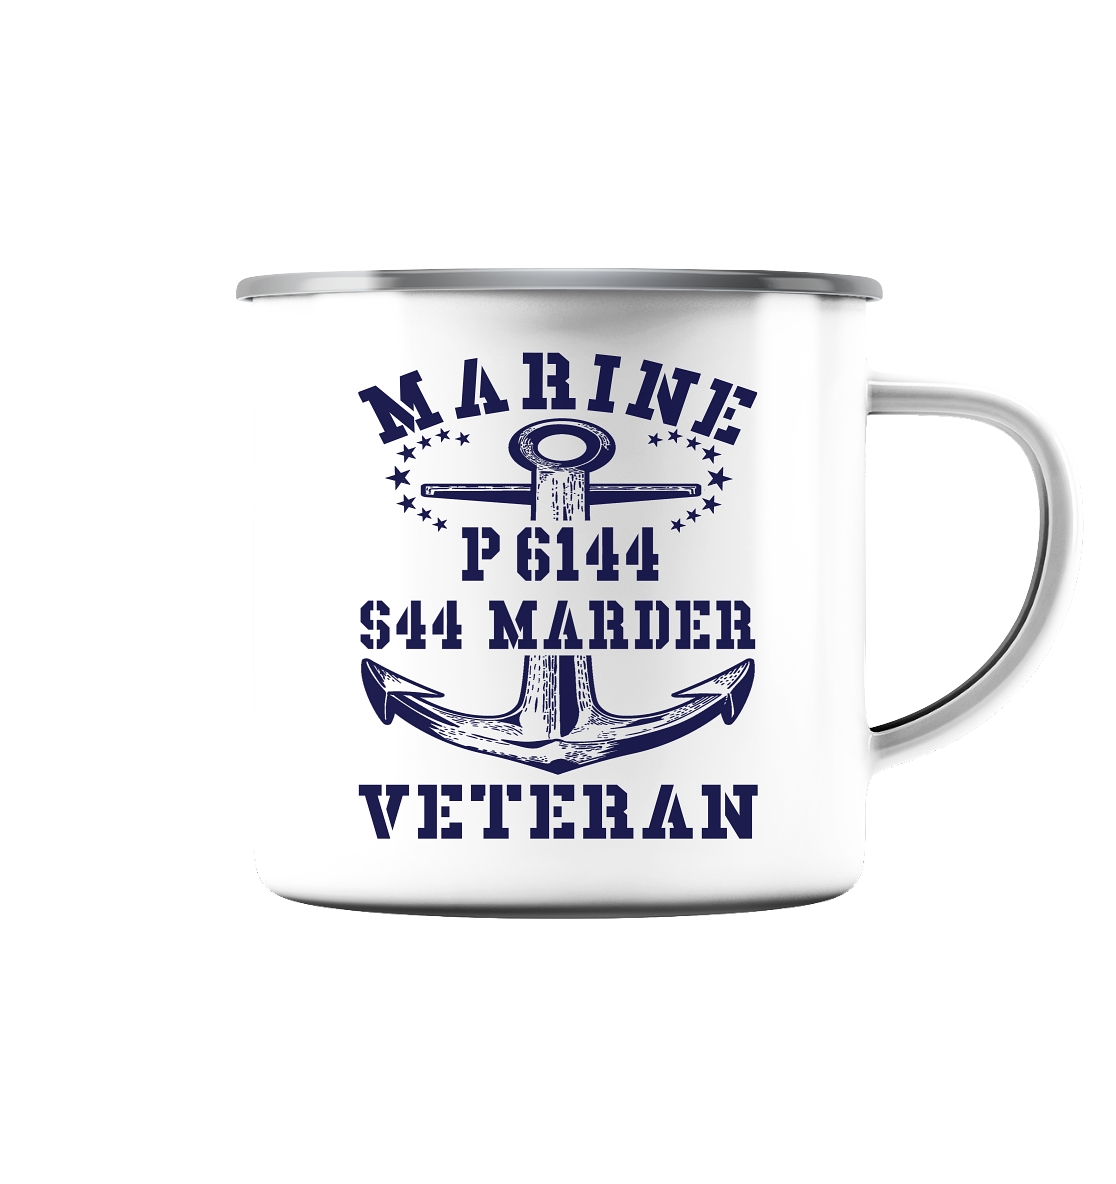 P6144 S44 MARDER Marine Veteran - Emaille Tasse (Silber)